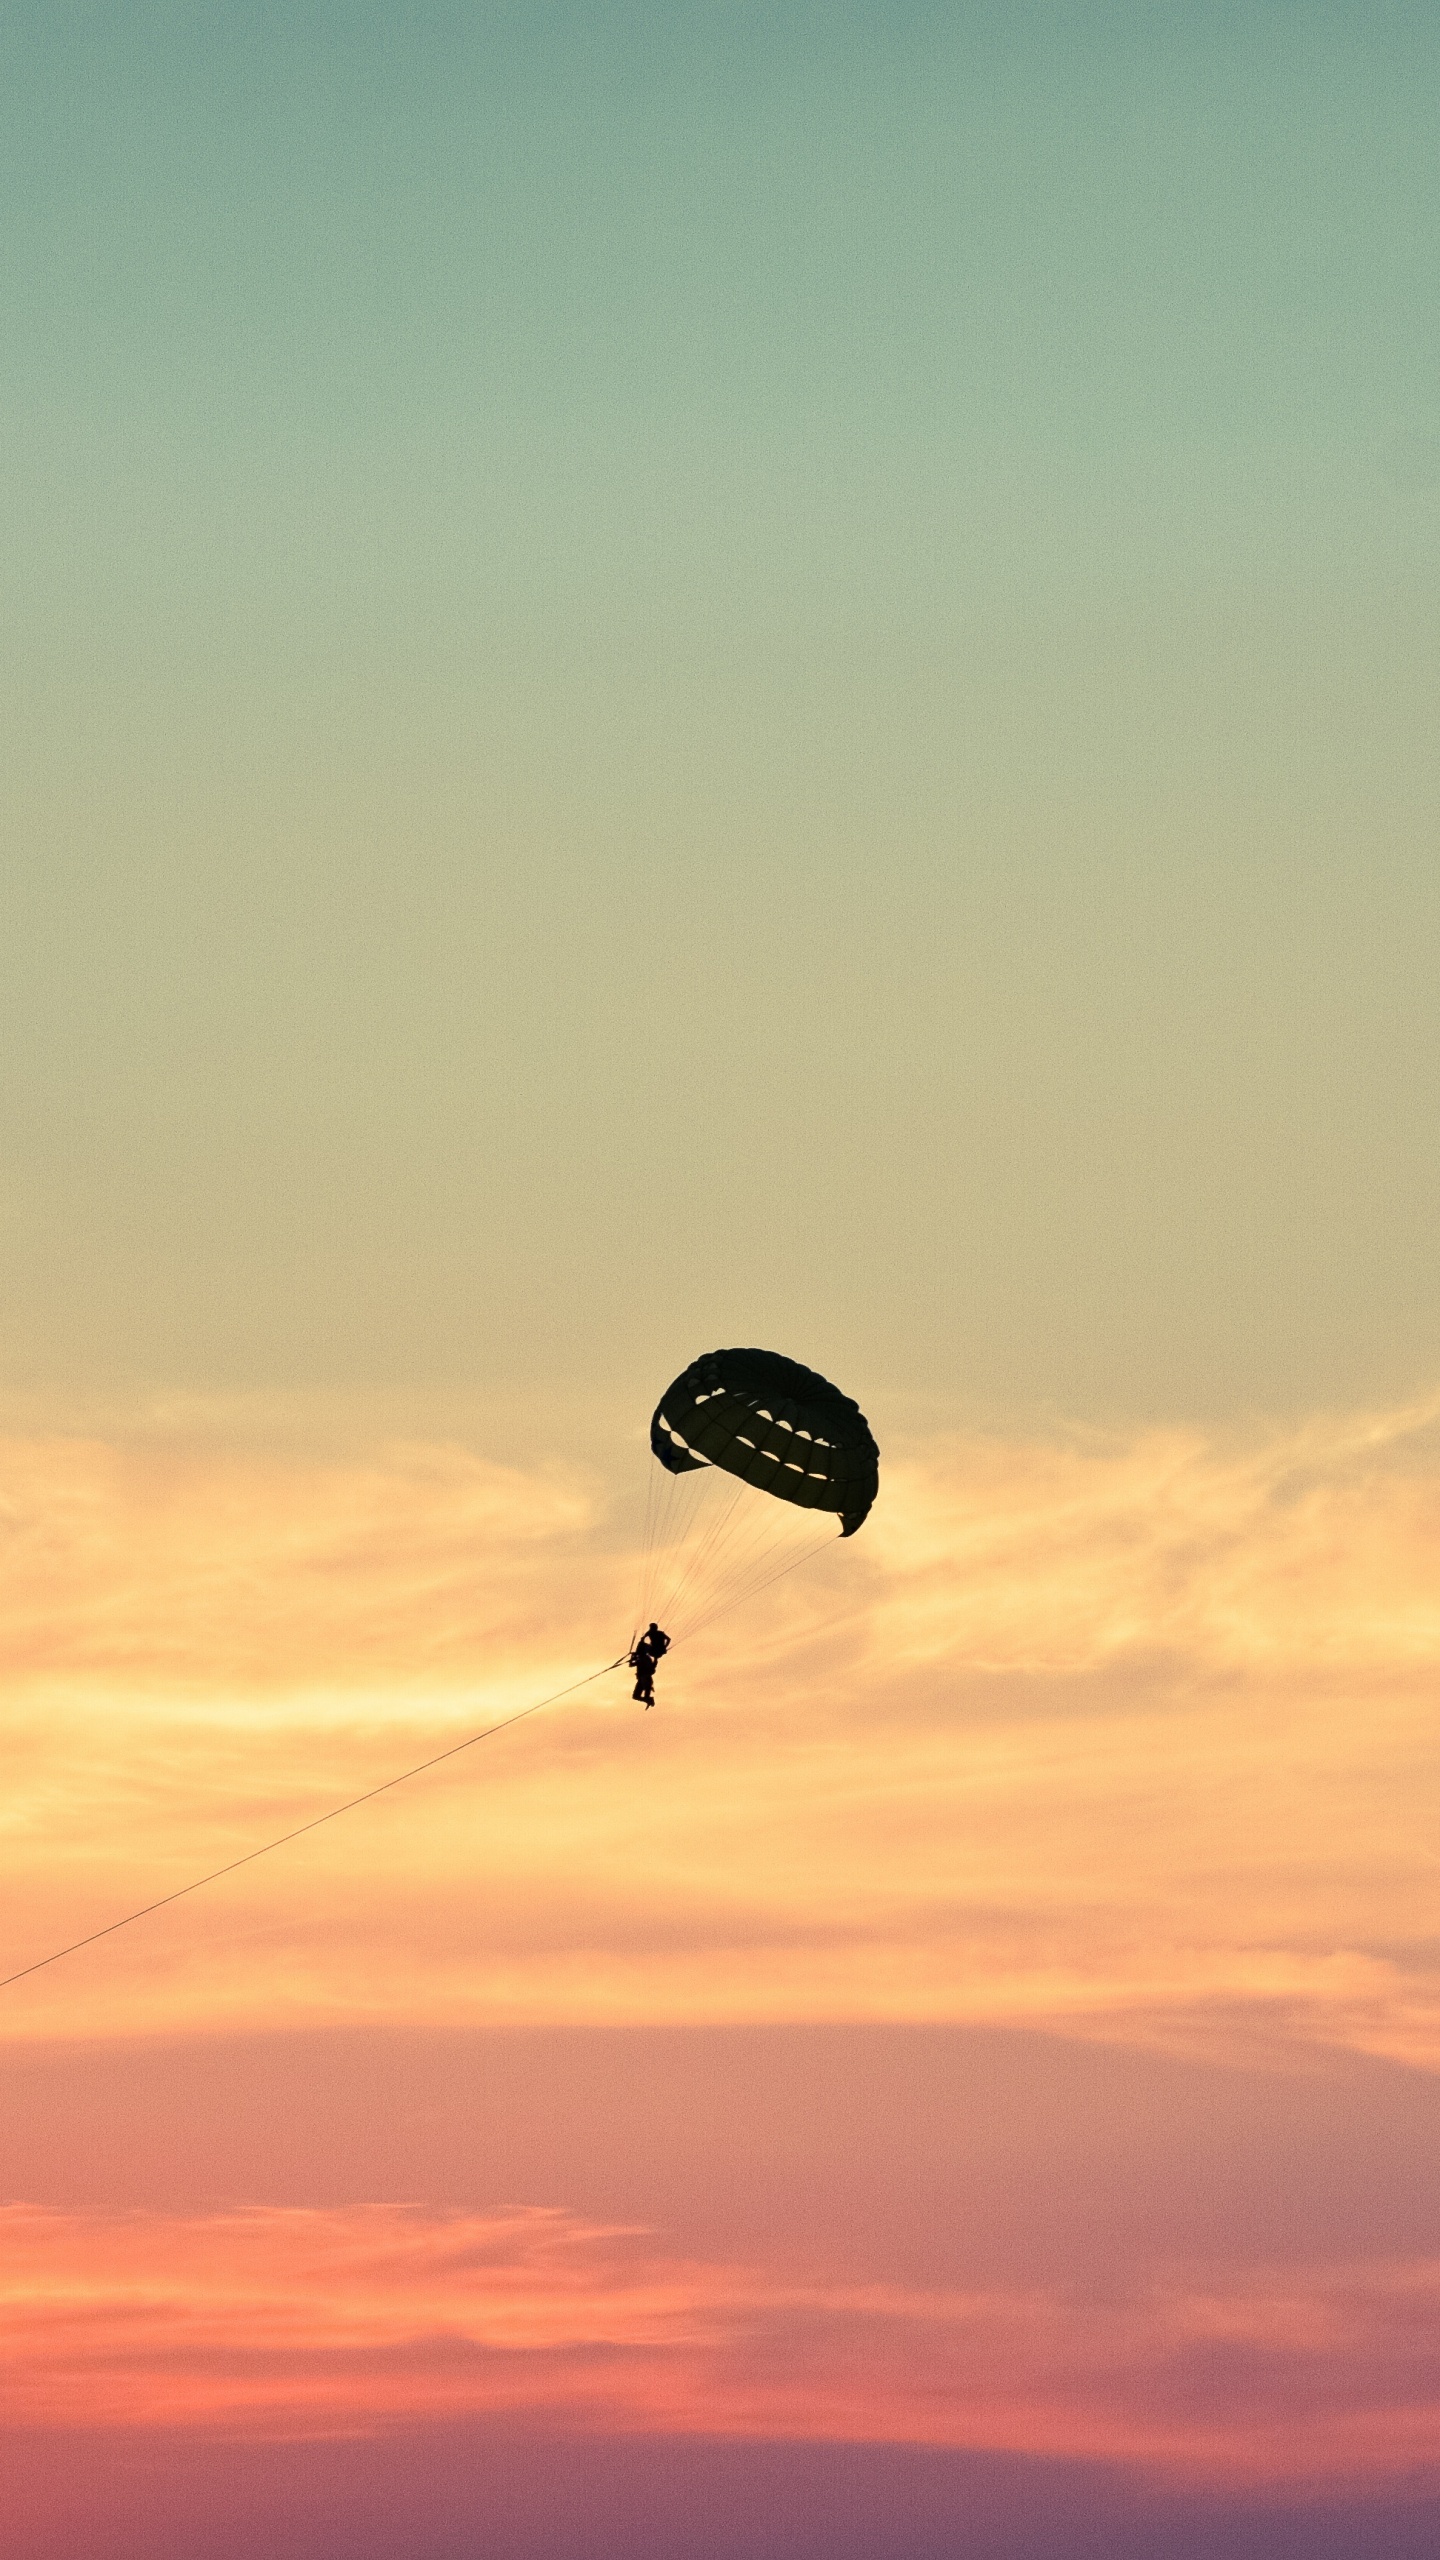 降落伞, 空中运动, 极限运动, 地平线, 伞兵 壁纸 1440x2560 允许